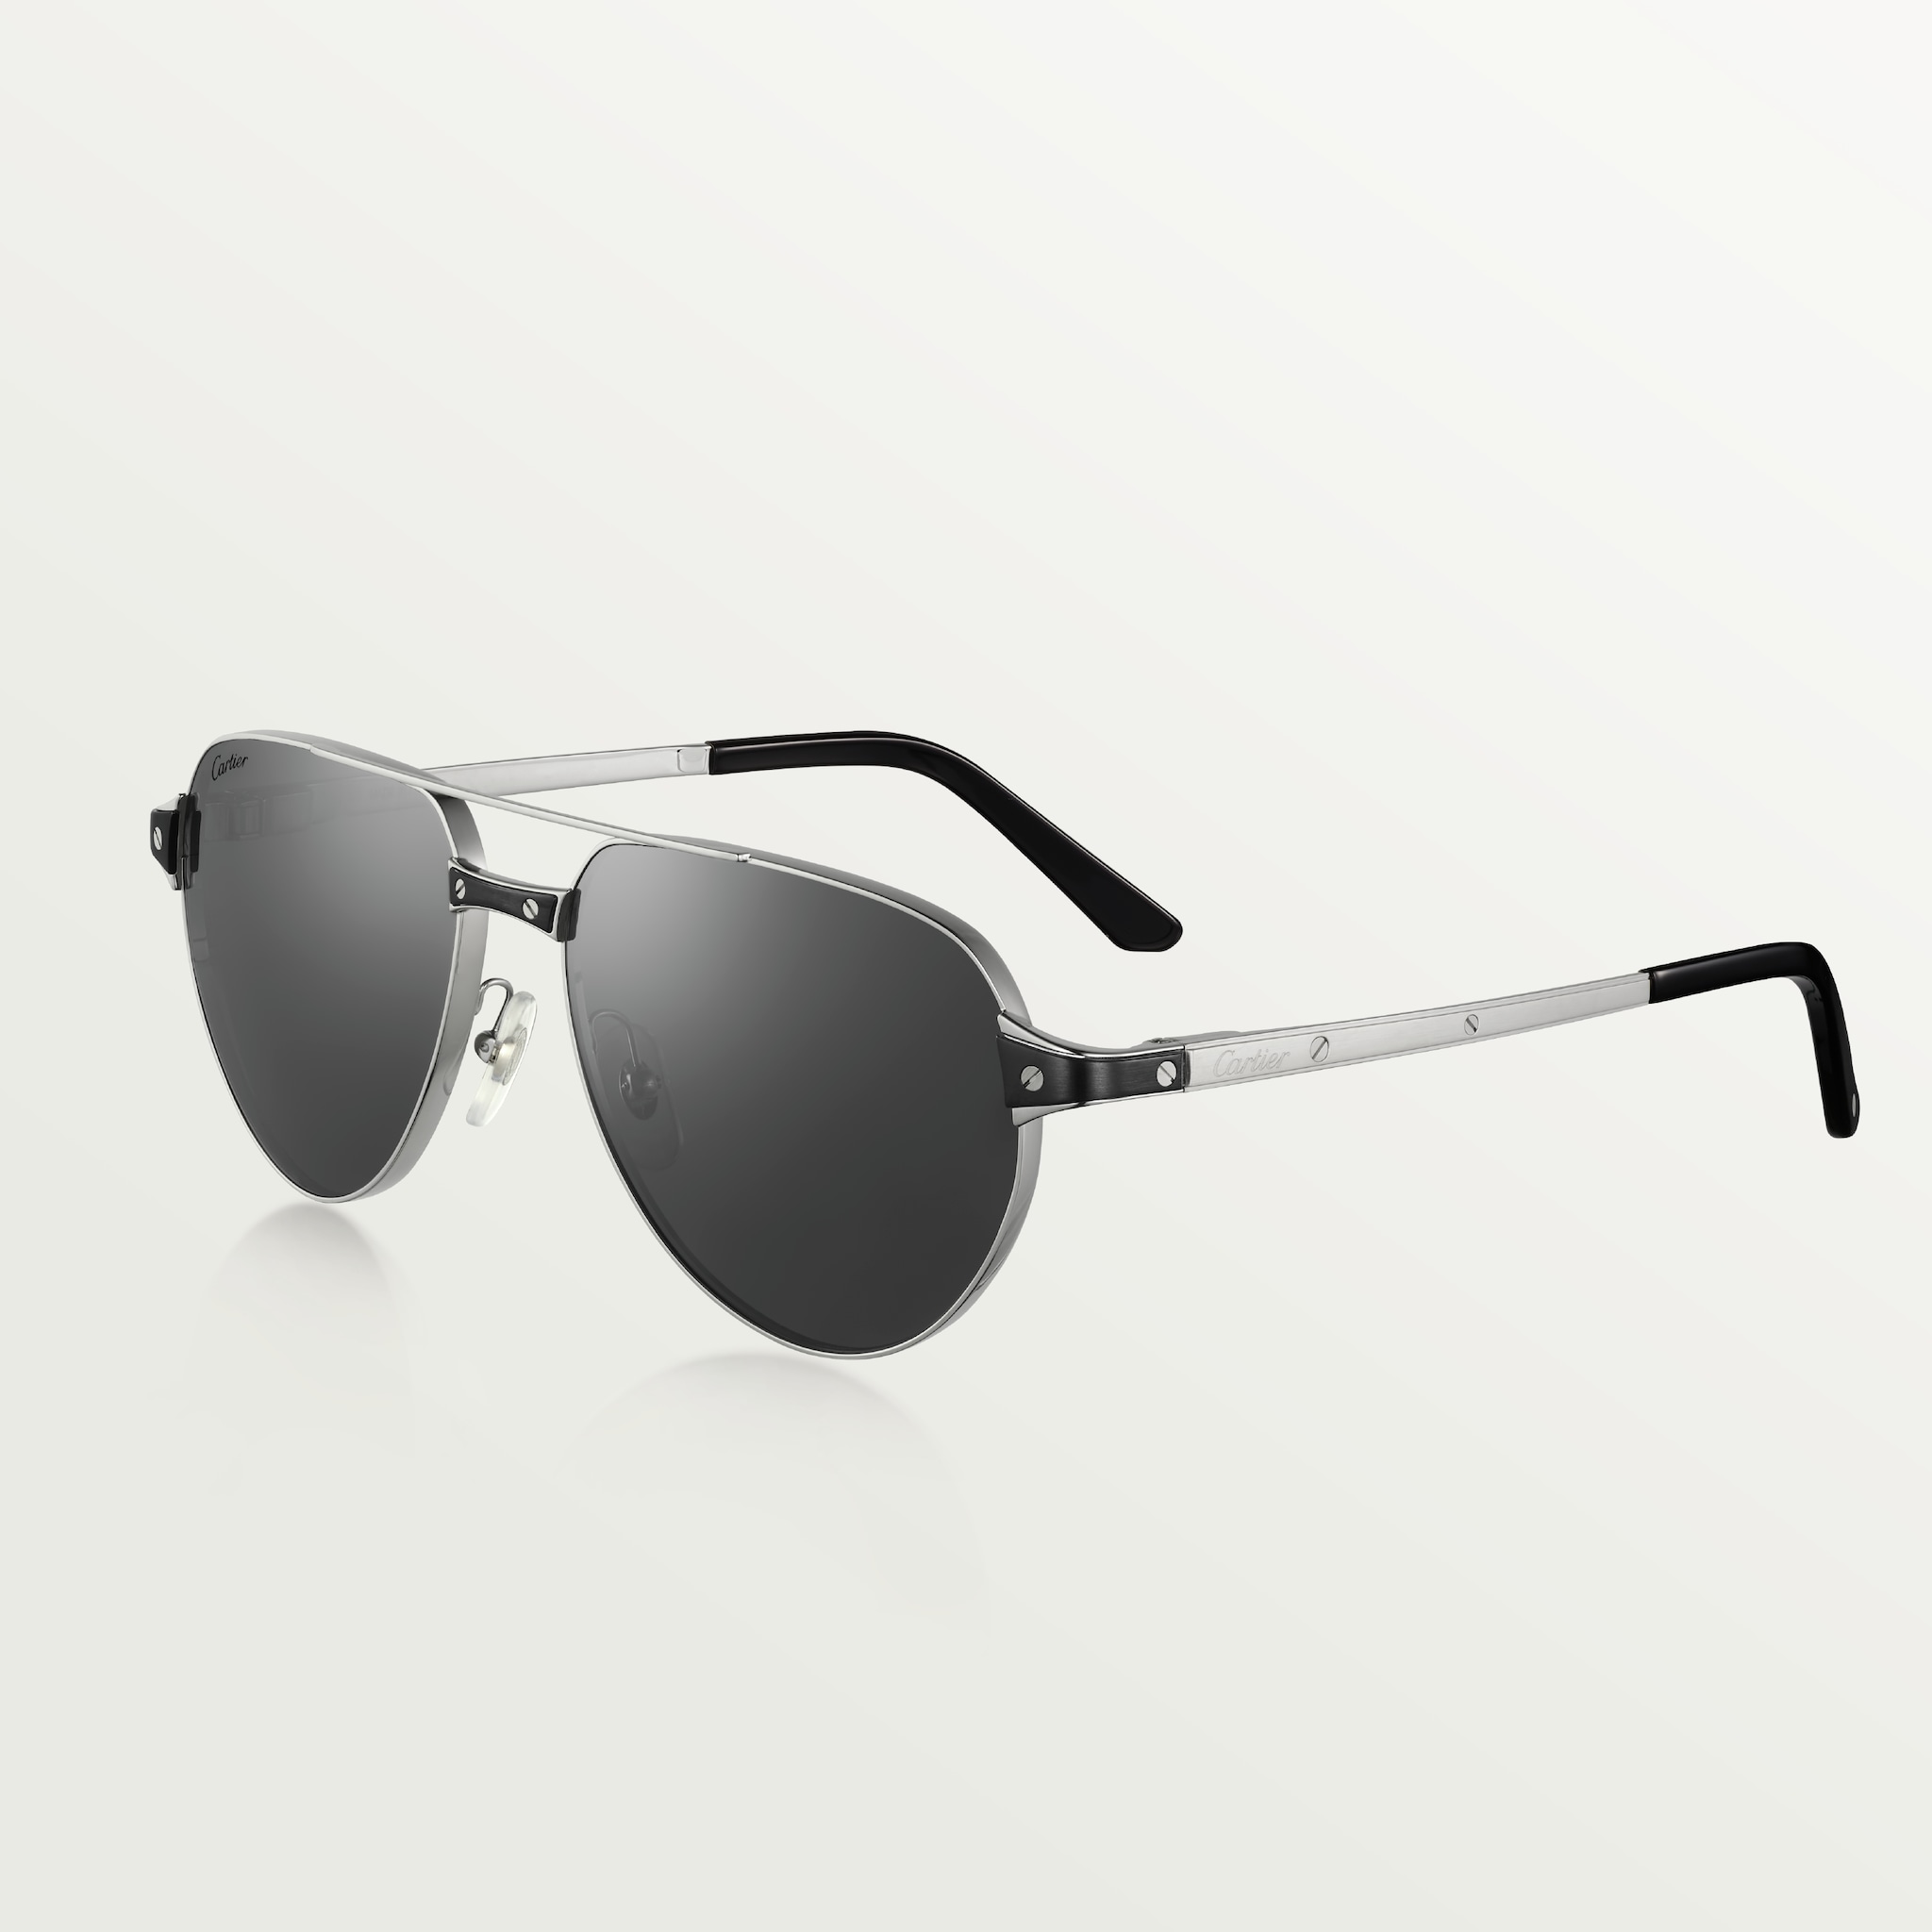 Gafas de sol Santos de CartierMetal acabado platino liso y cepillado, lentes grises